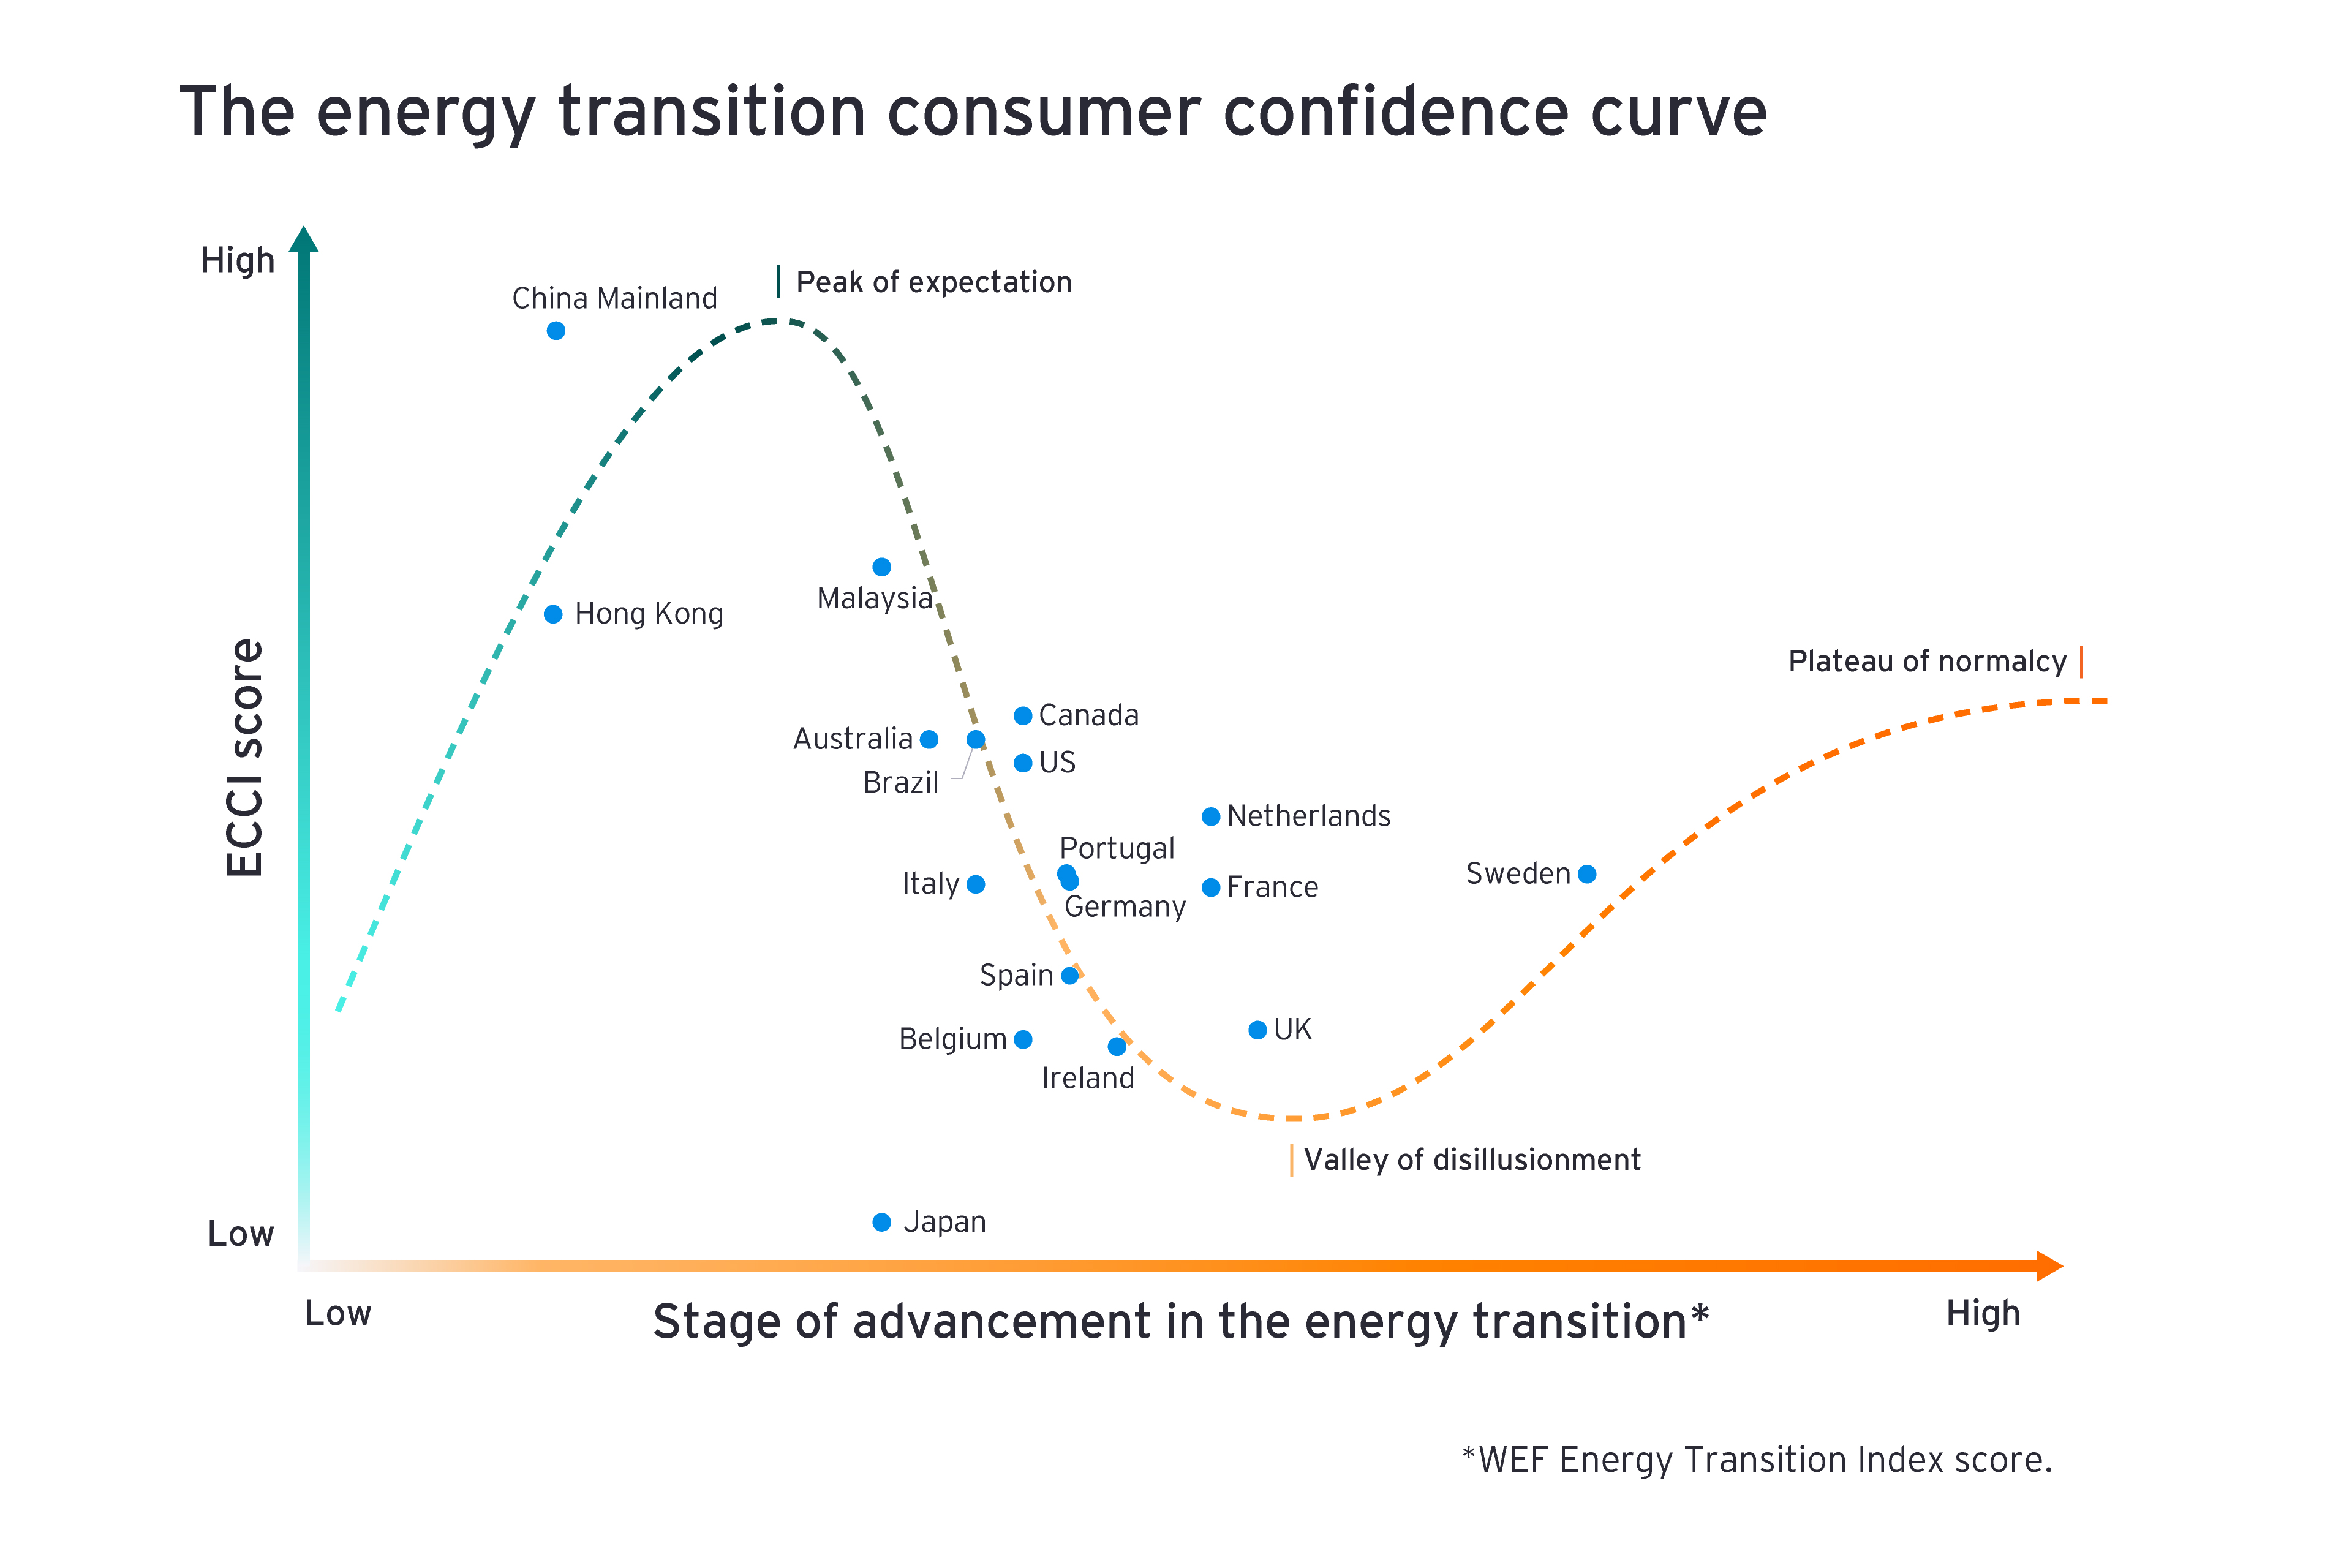 A curva de confiança do consumidor na transição energética